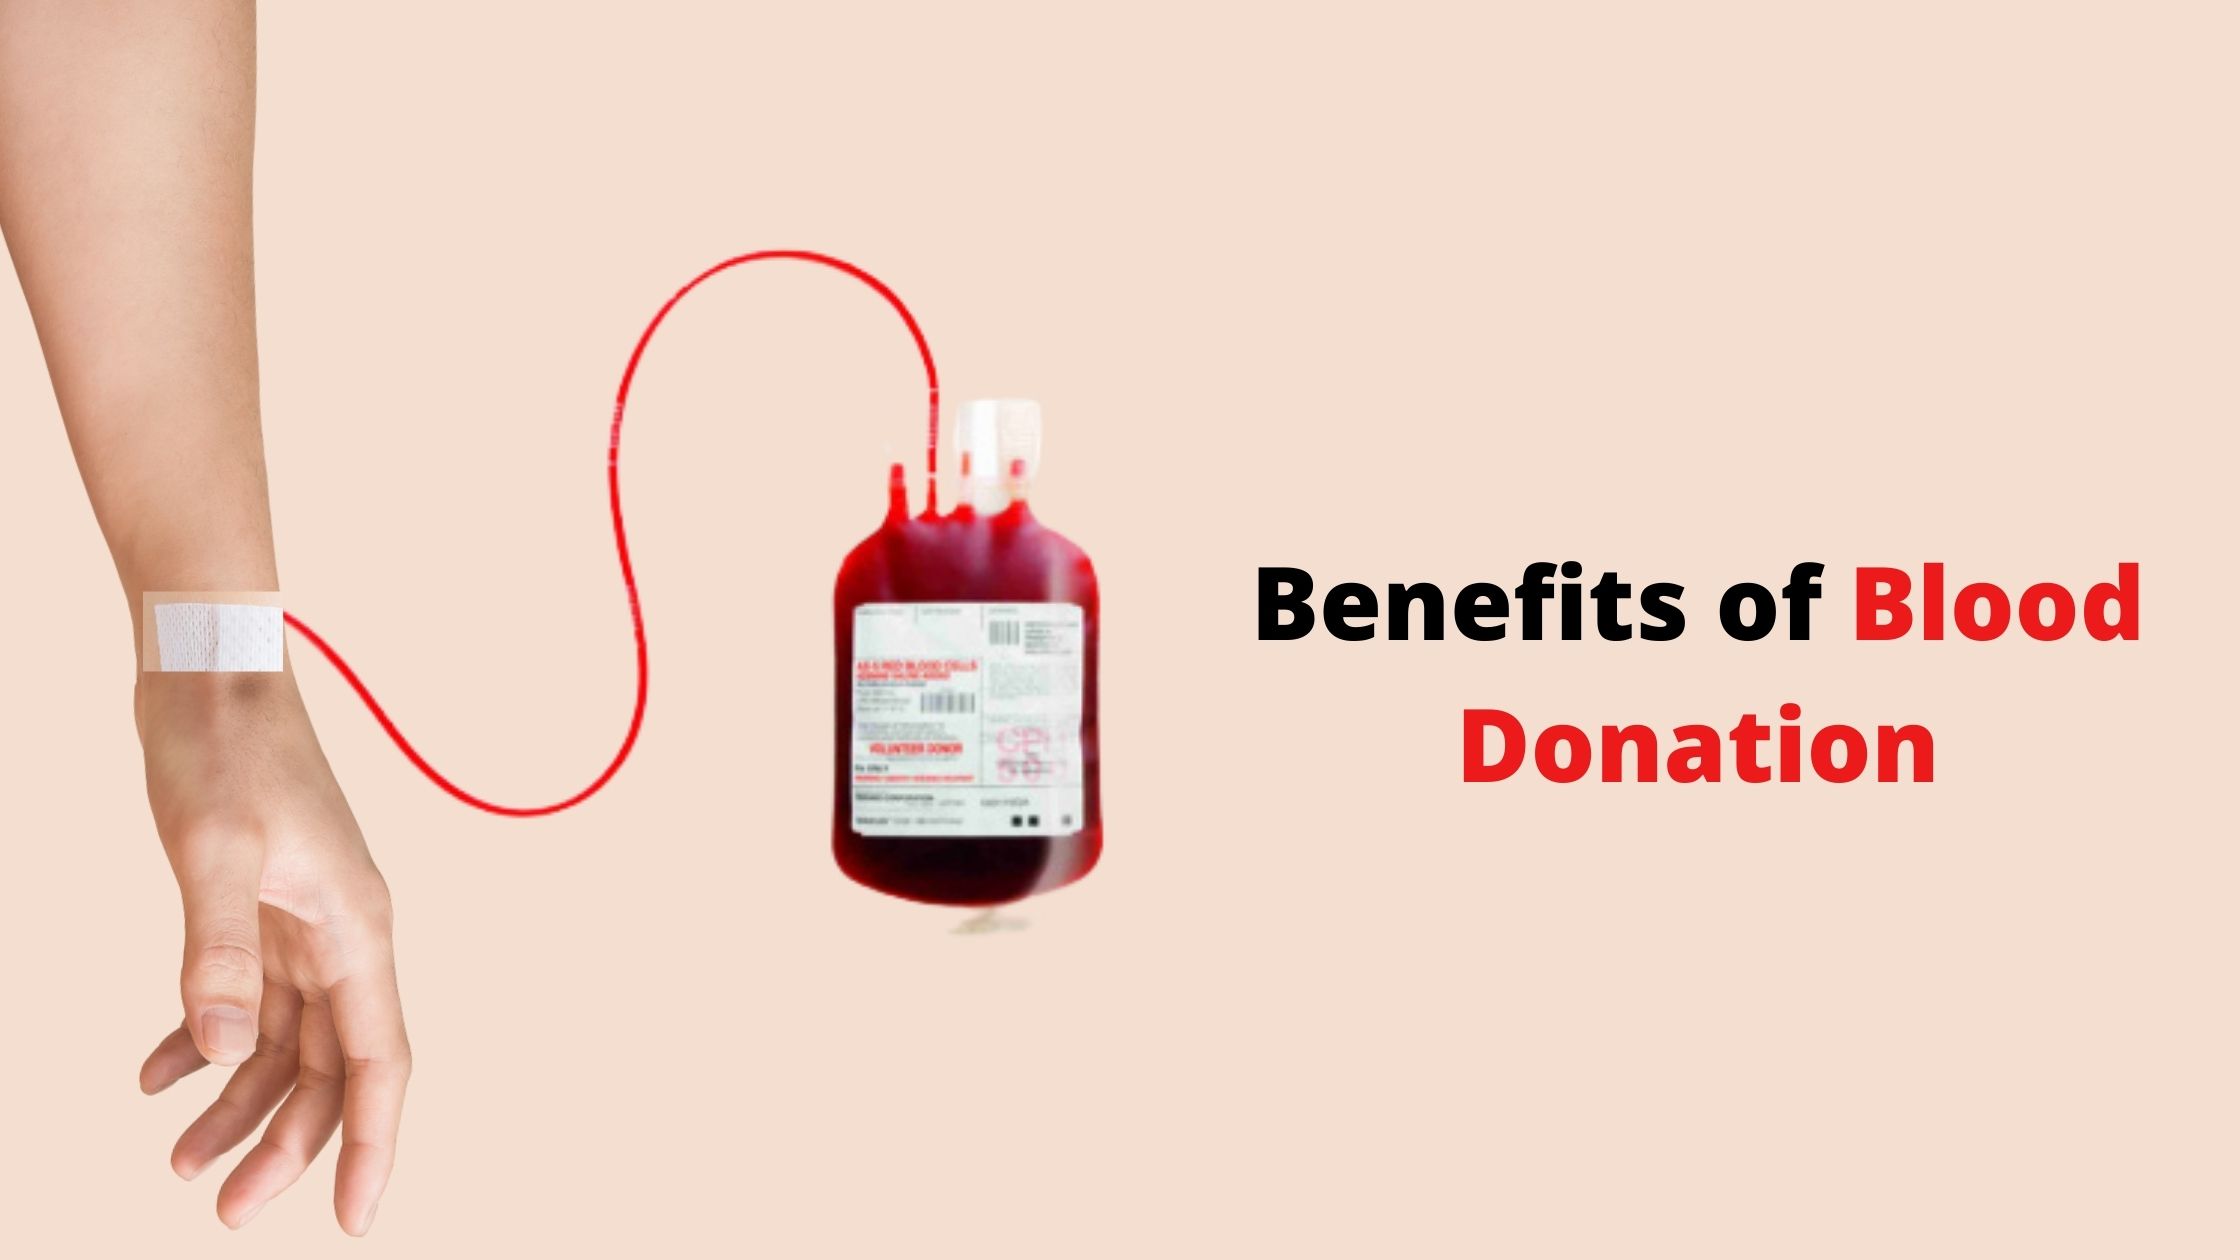 Донорство крови вес. Blood donation. Переливание крови картинки для презентации. Фон для презентации донорство крови.